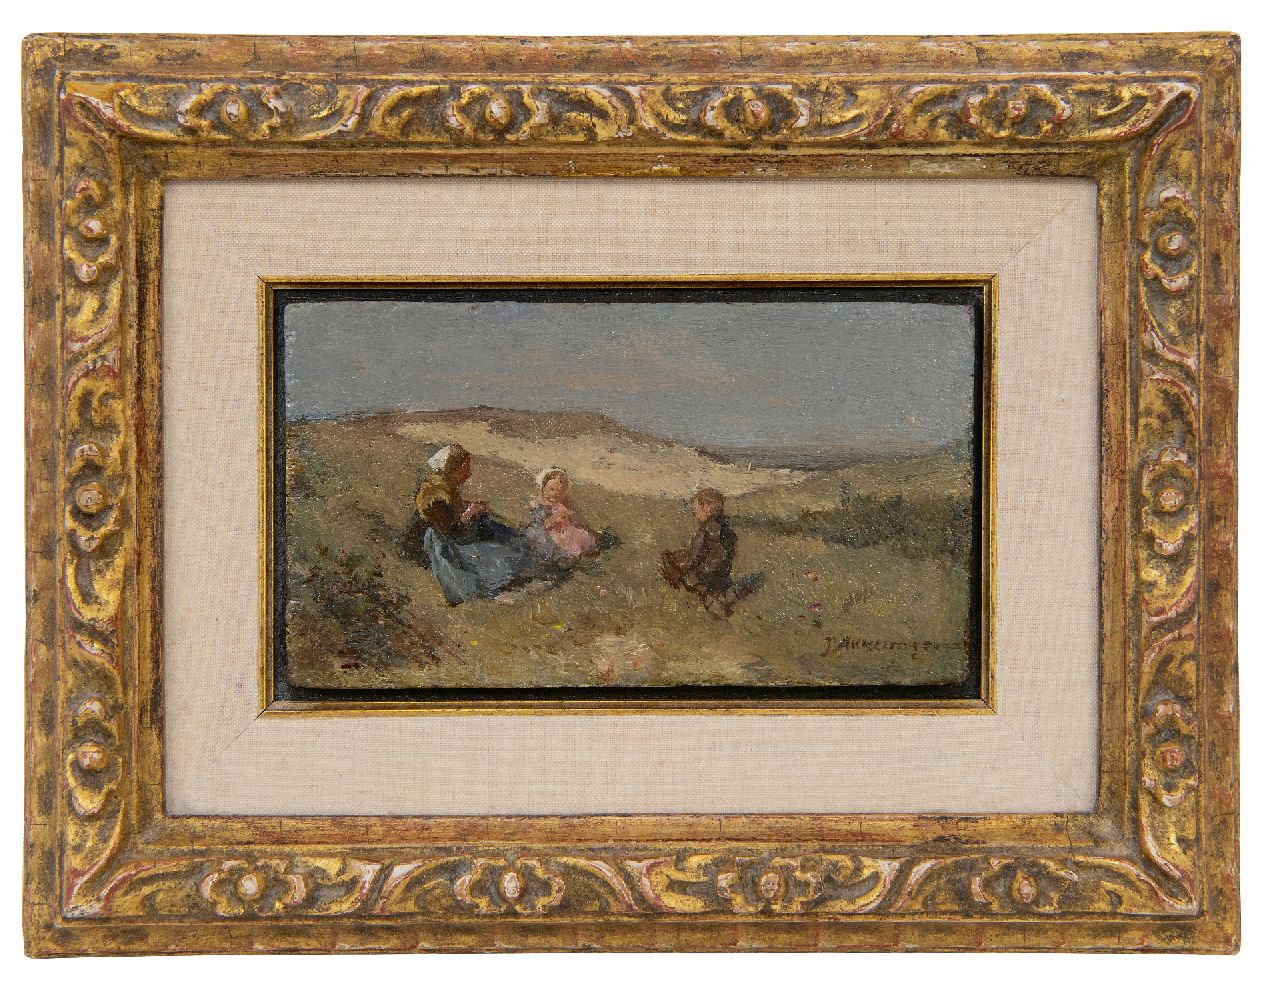 Akkeringa J.E.H.  | 'Johannes Evert' Hendrik Akkeringa, Vissersvrouw met twee kinderen in de duinen, olieverf op paneel 7,5 x 12,6 cm, gesigneerd rechtsonder